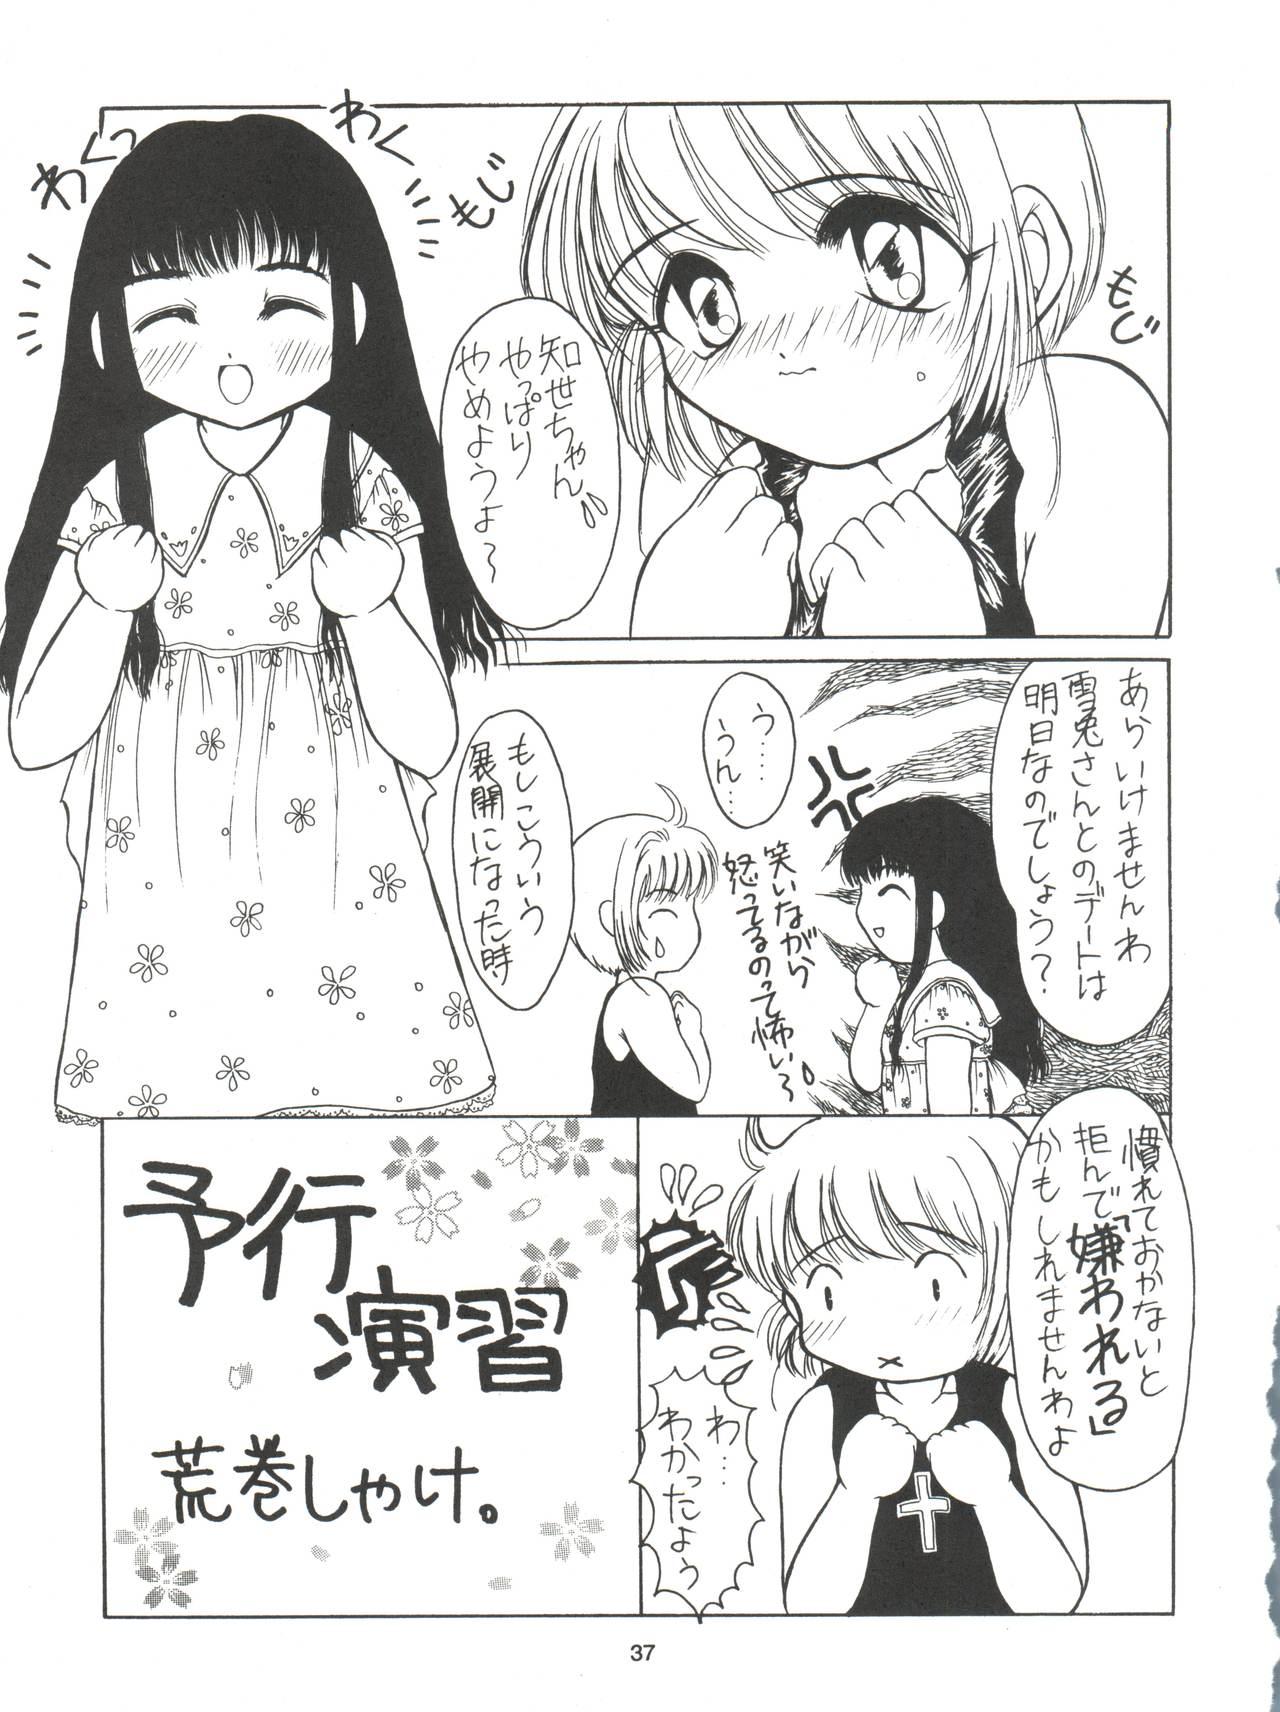 Sakura ja Nai Moon!! Character Voice Tange Sakura 36